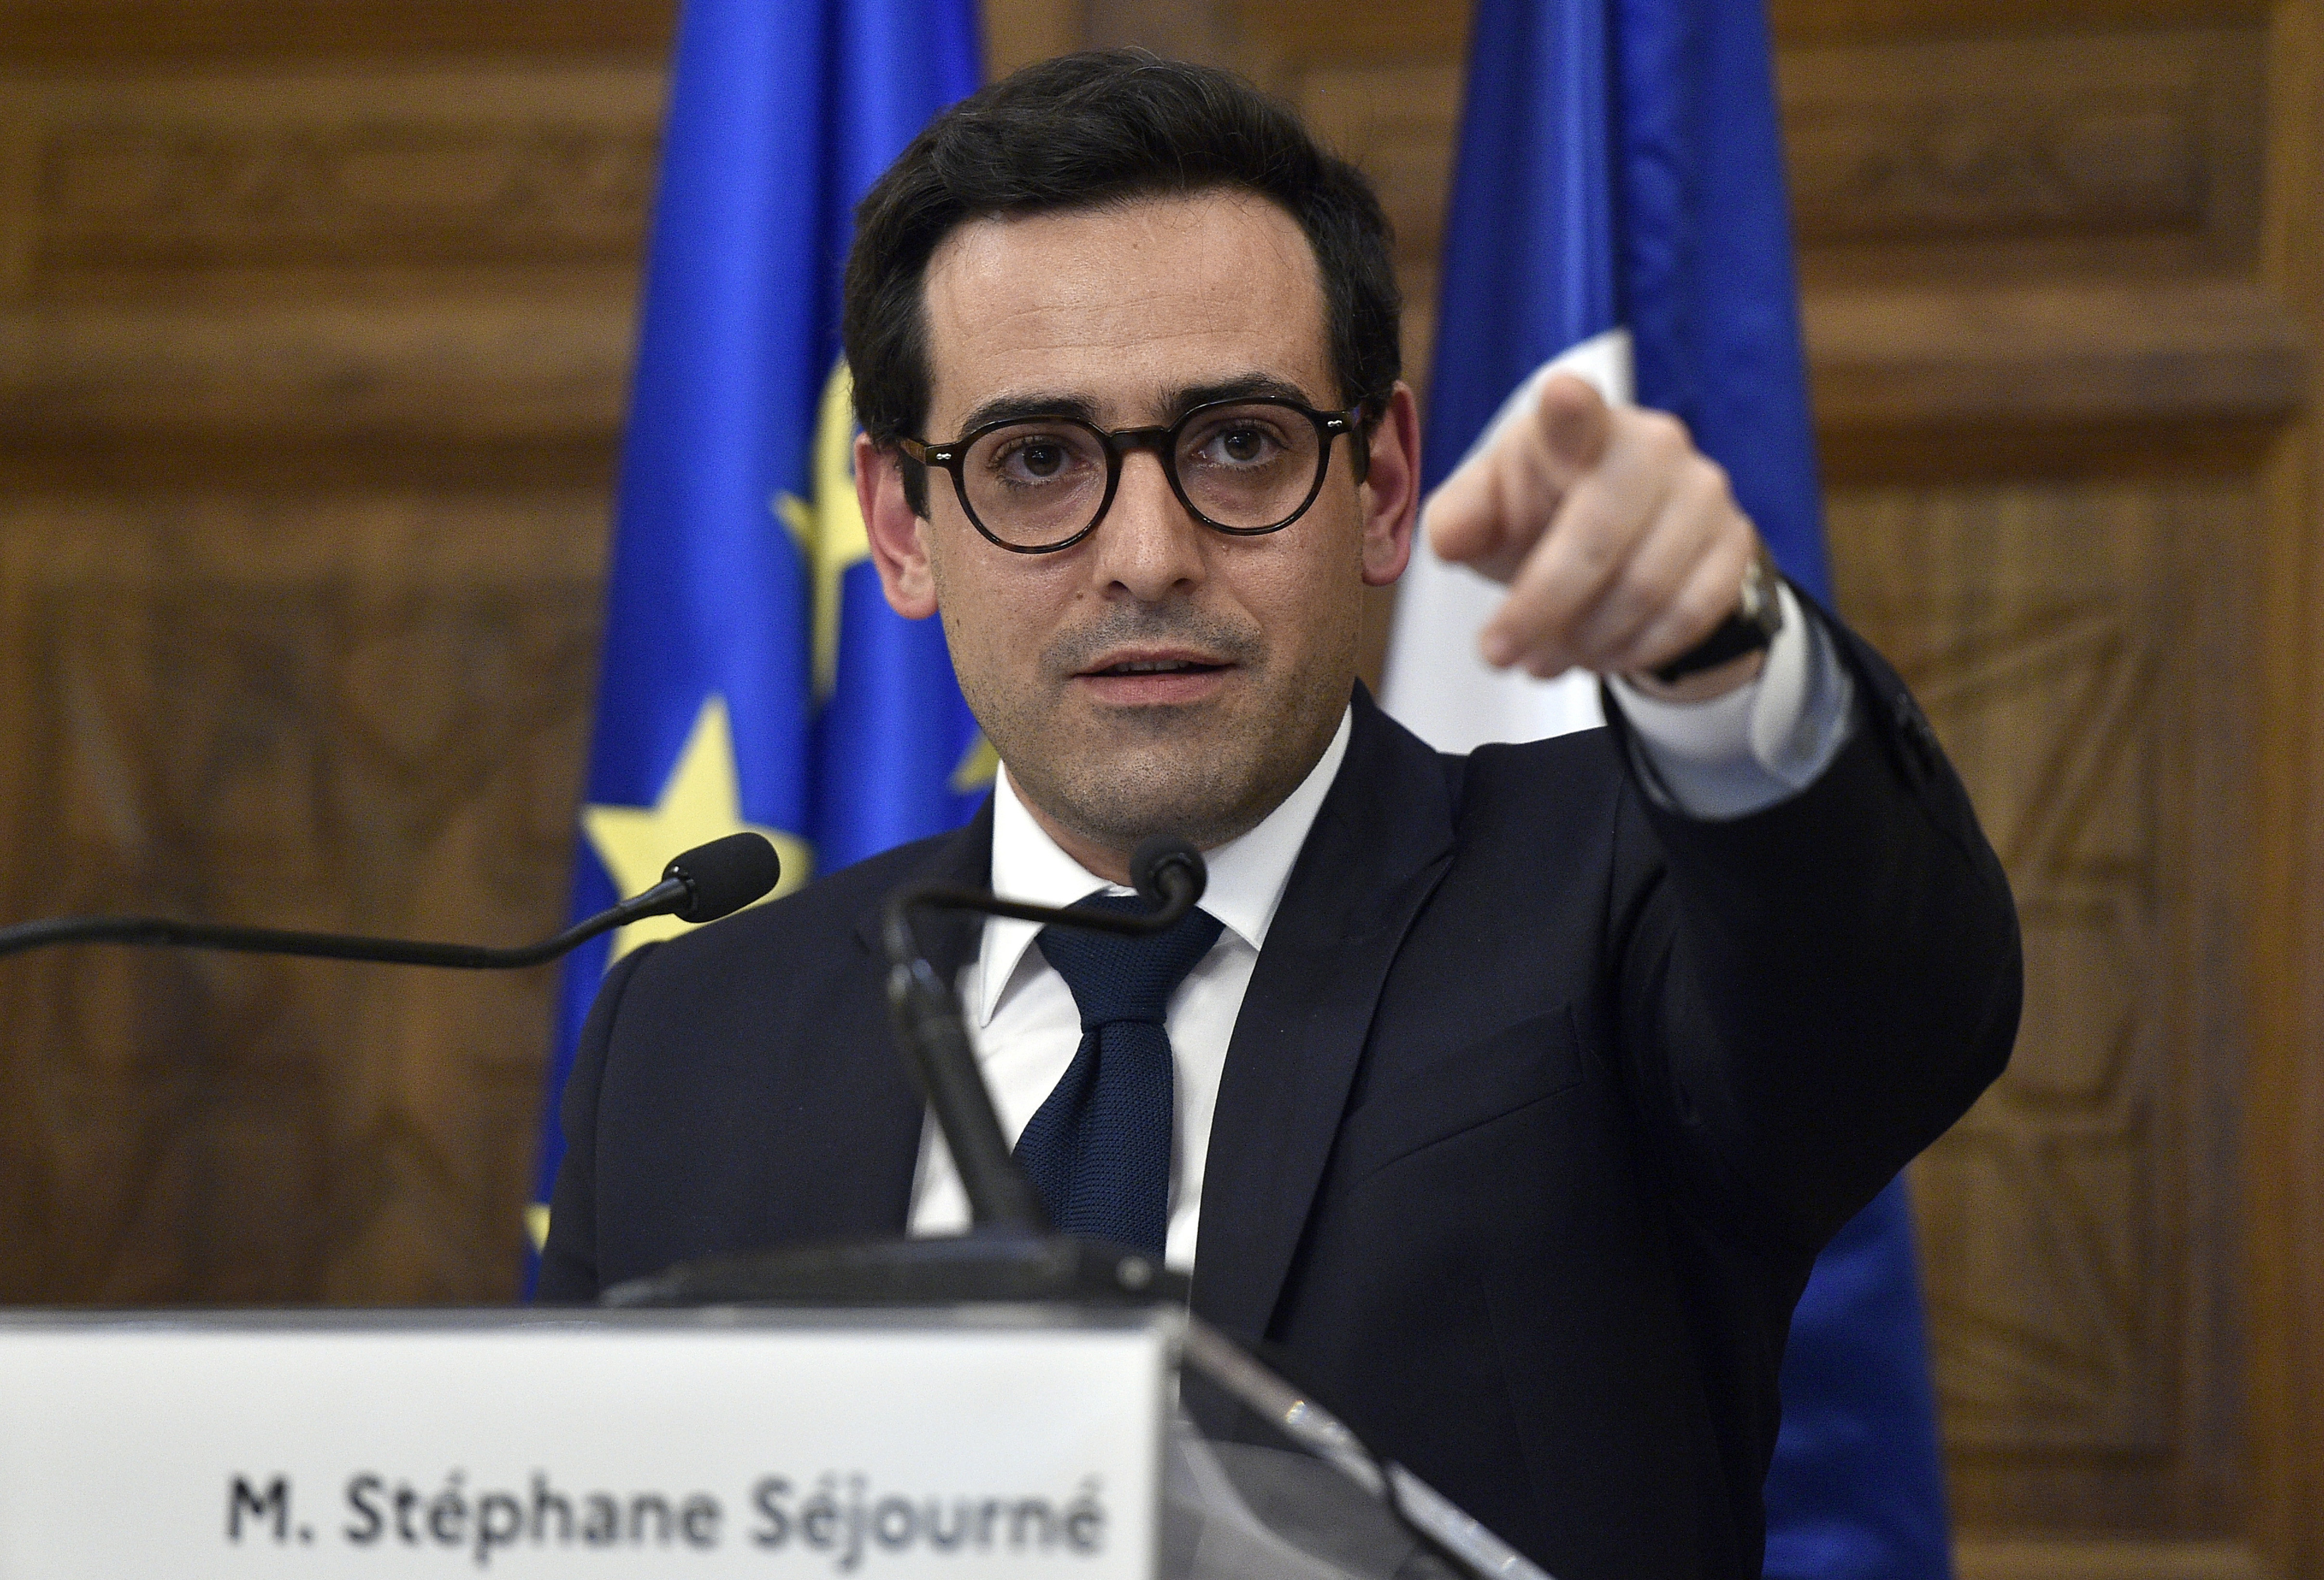 Стефан Сежурне, външен министър на Франция, сподели позицията на страната